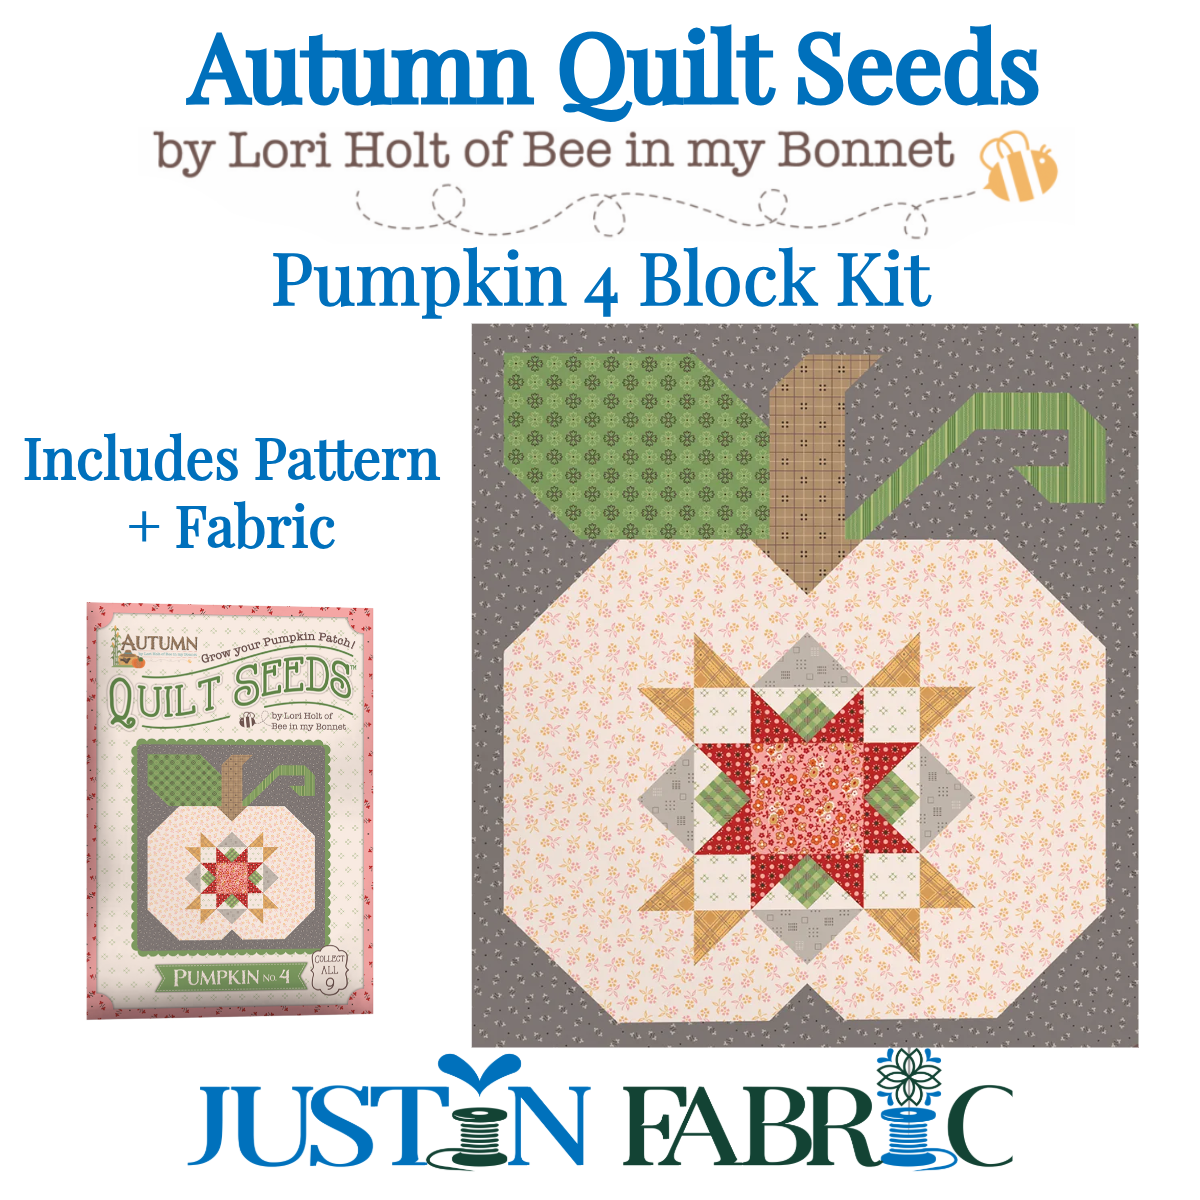 Autumn Quilt Seeds Pumpkin 4 Block Kit Featuring Autumn by Lori Holt